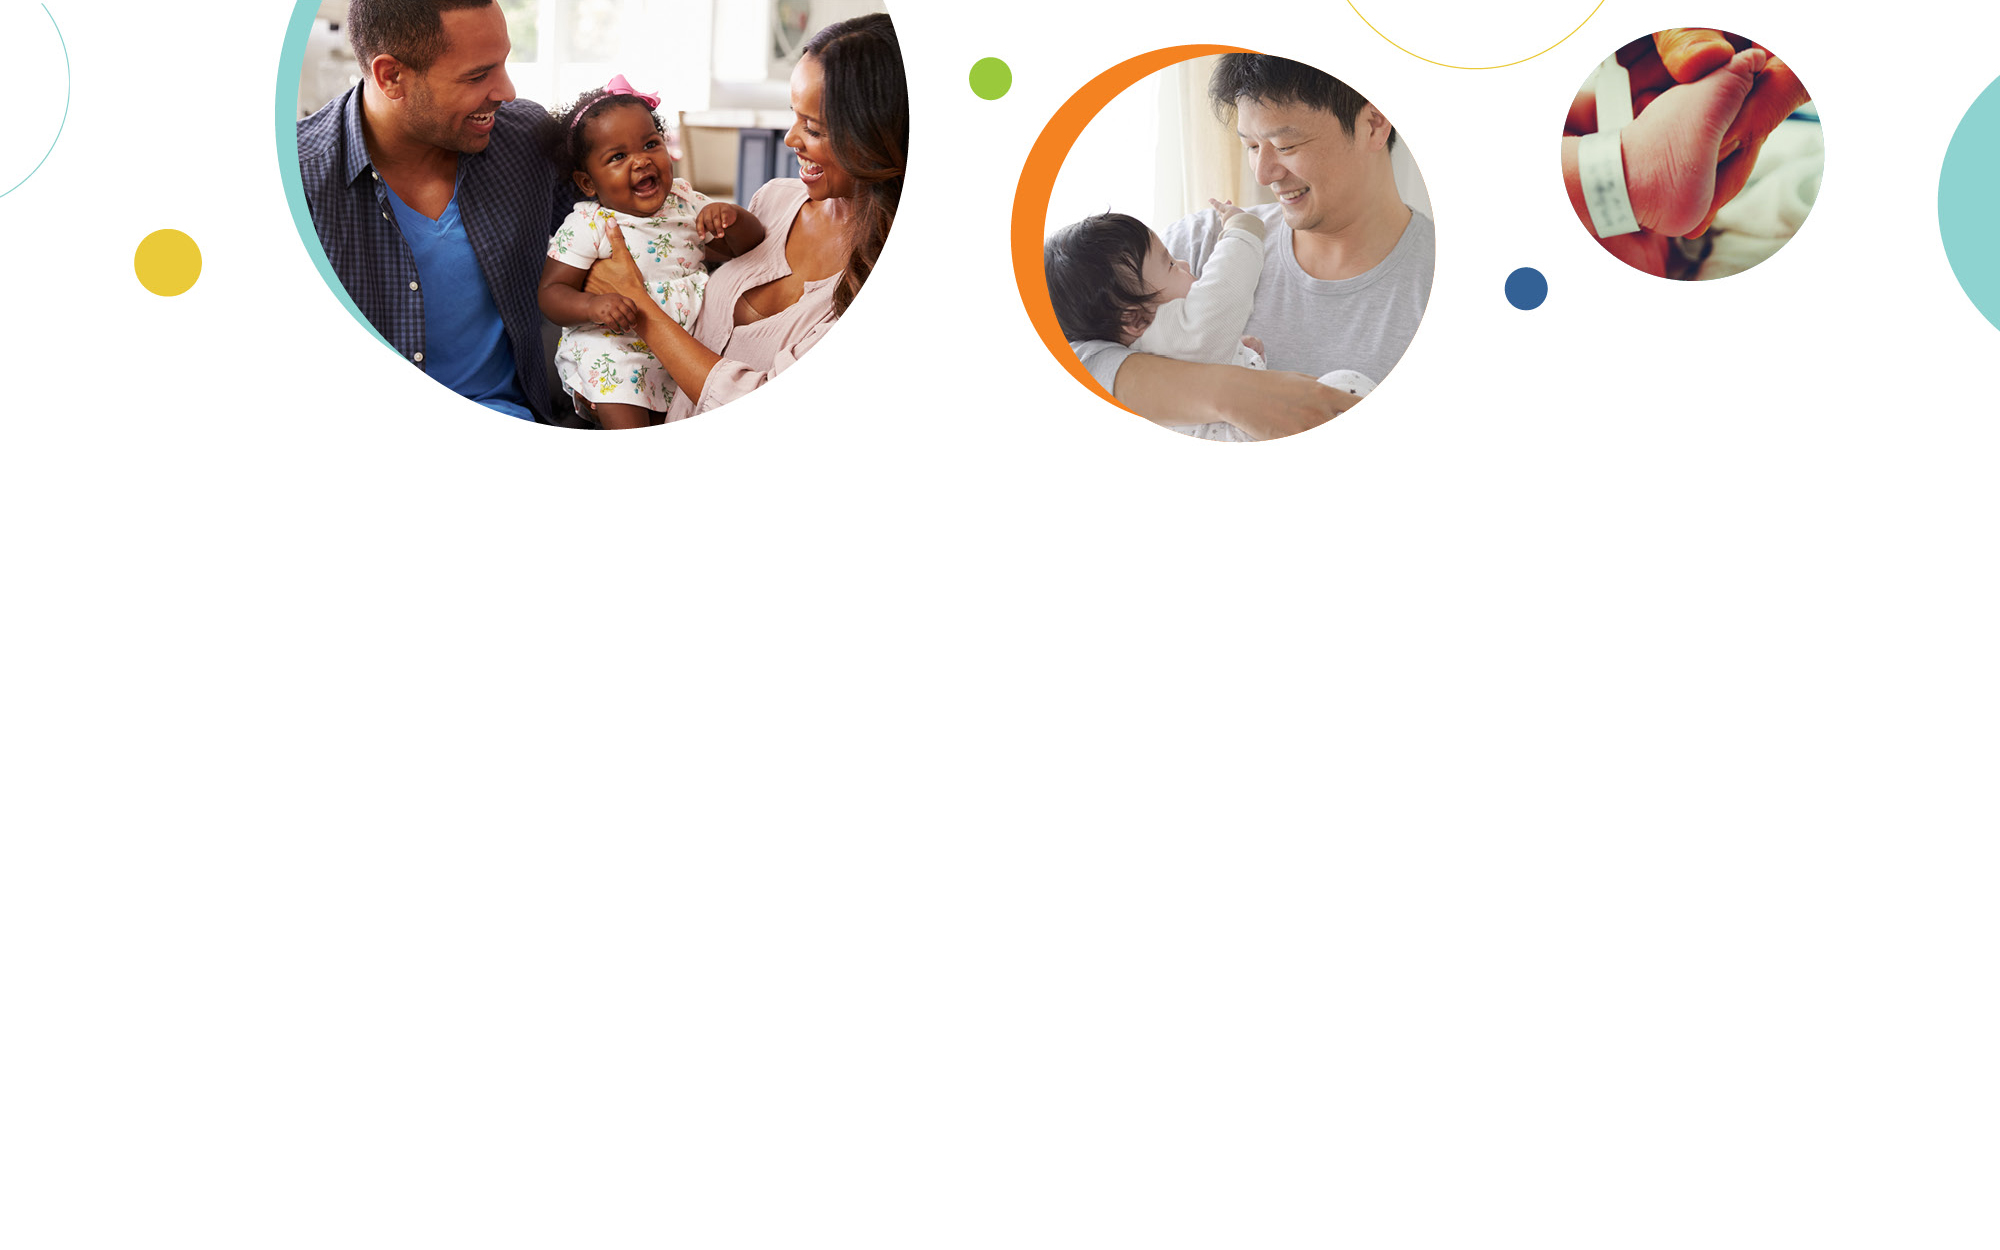 Una serie de tres imágenes relacionadas con la salud y el desarrollo infantil que incluye: dos padres sonriendo y sosteniendo a un bebé (izquierda), un padre sonriendo y sosteniendo a un bebé (centro), y una imagen del pie de un recién nacido (derecha).